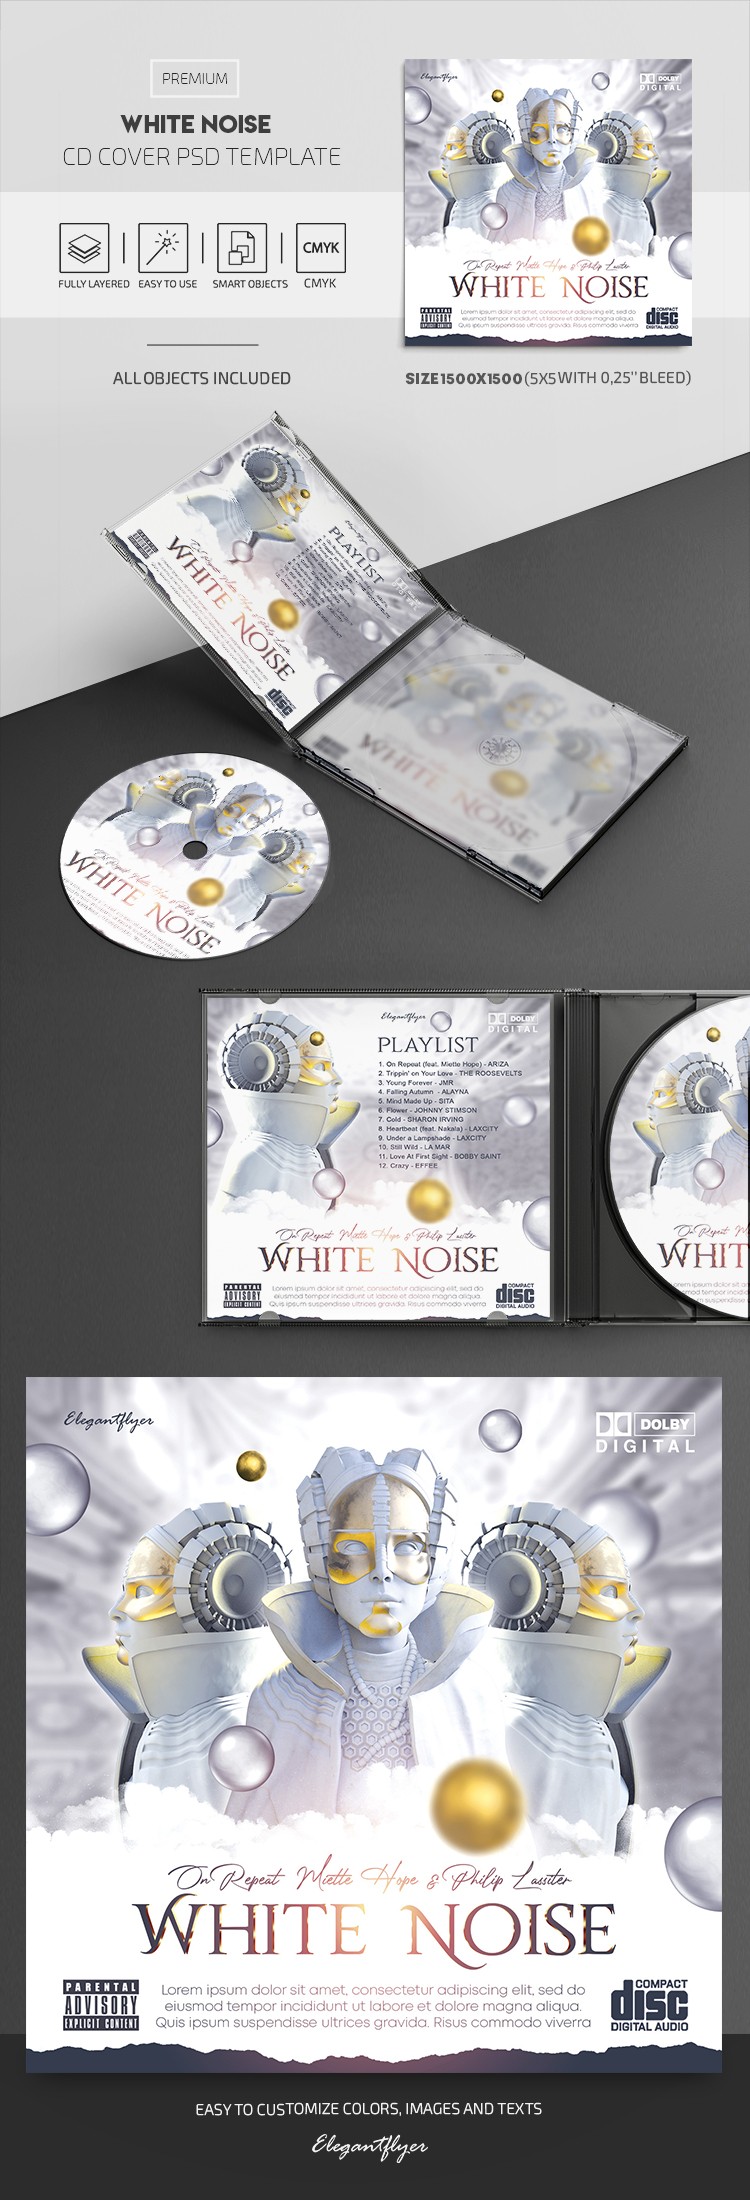 Portada del CD de Ruido Blanco by ElegantFlyer